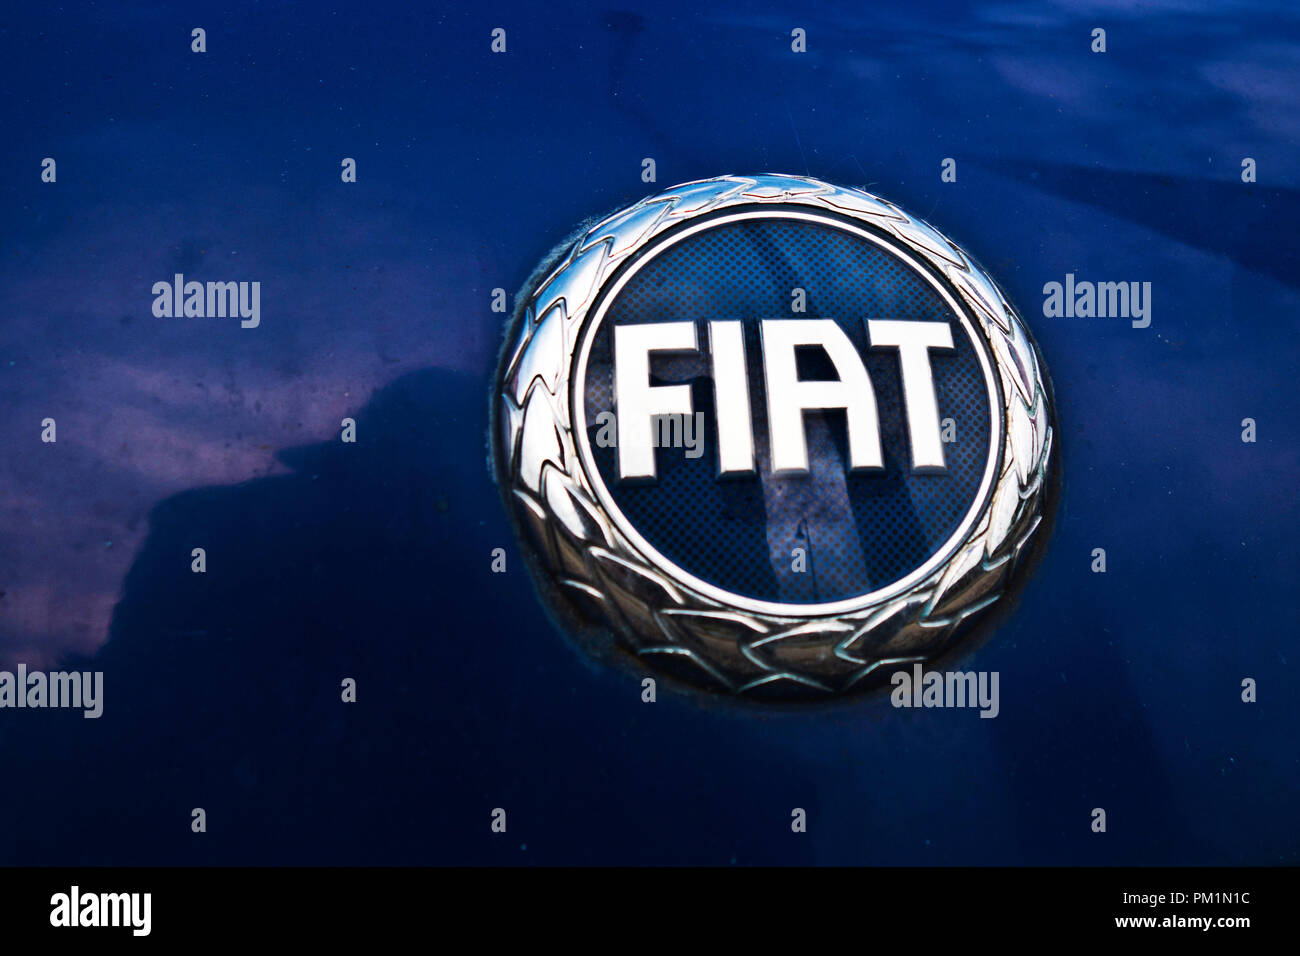 FIAT Auto hersteller Logo auf ein Auto Stockfoto